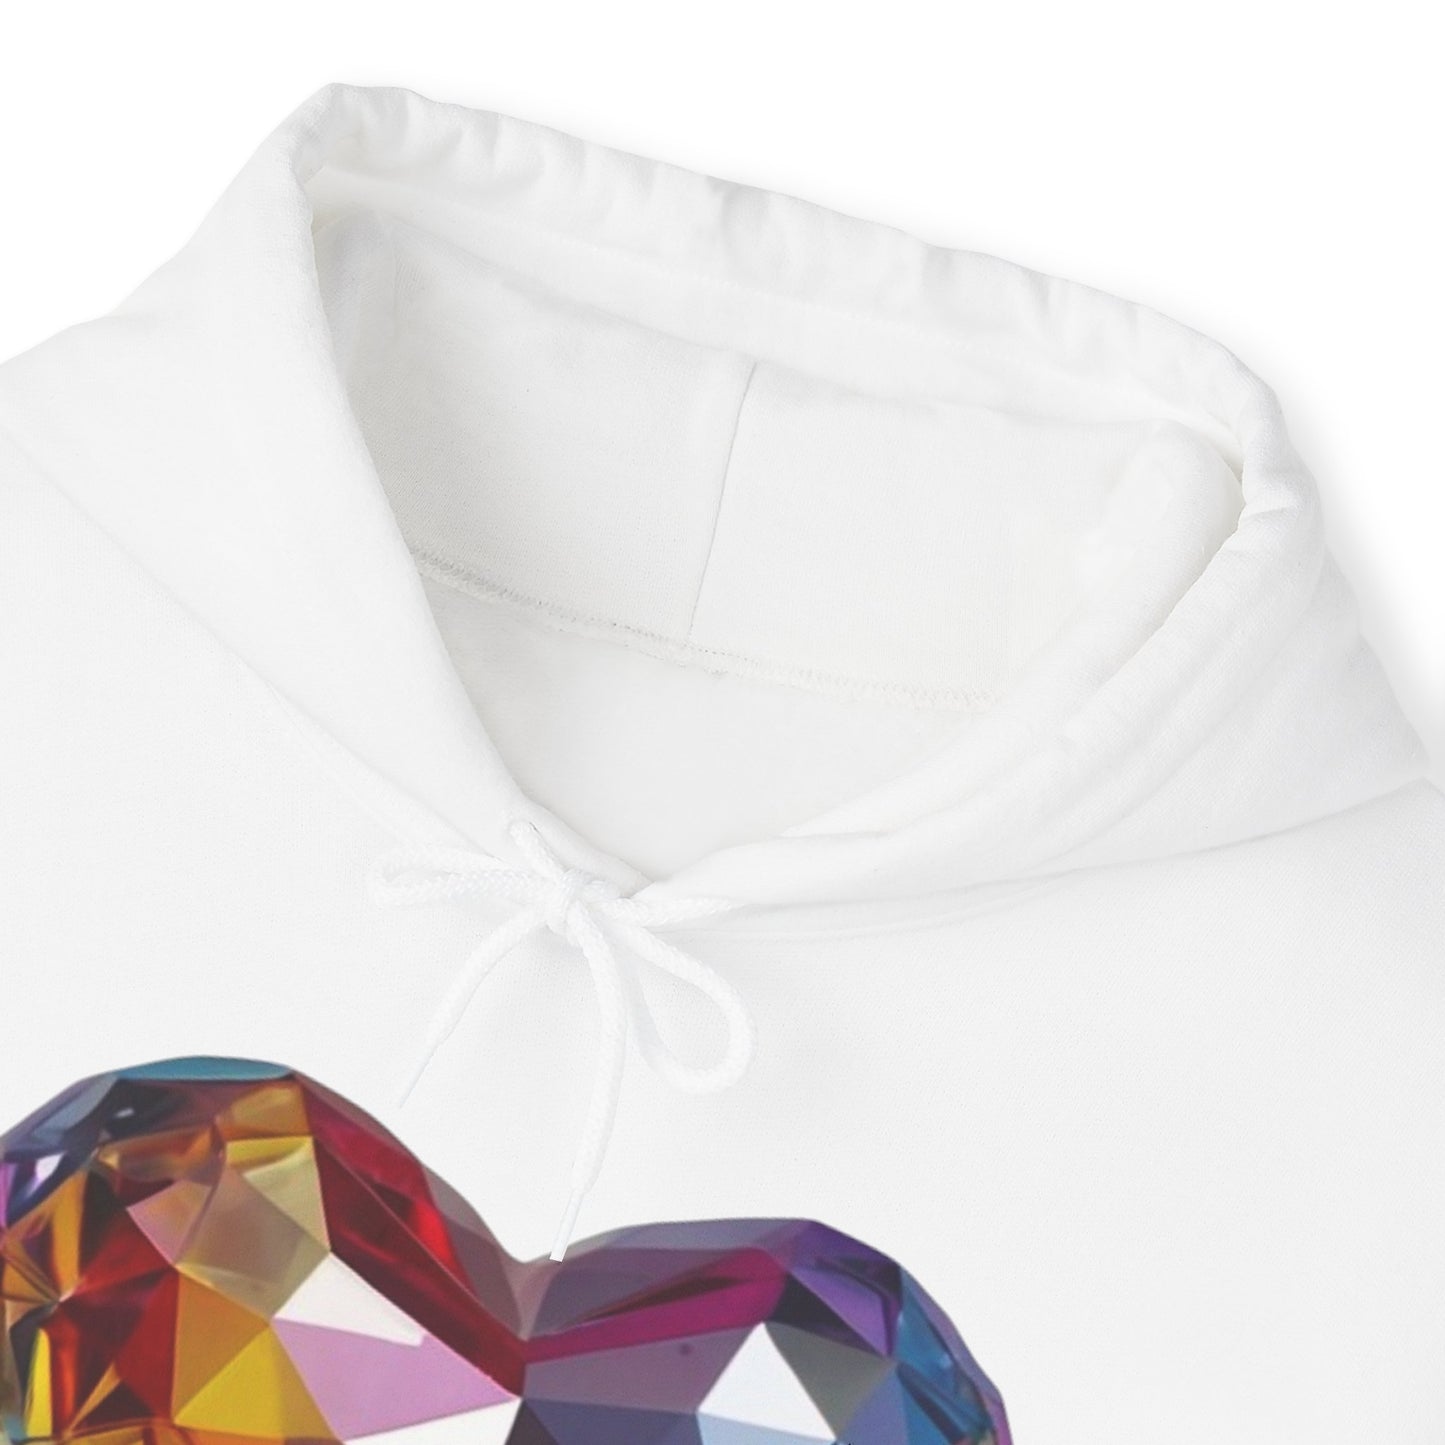 Multicoloured Crystal Love Heart - Unisex Hooded Sweatshirt